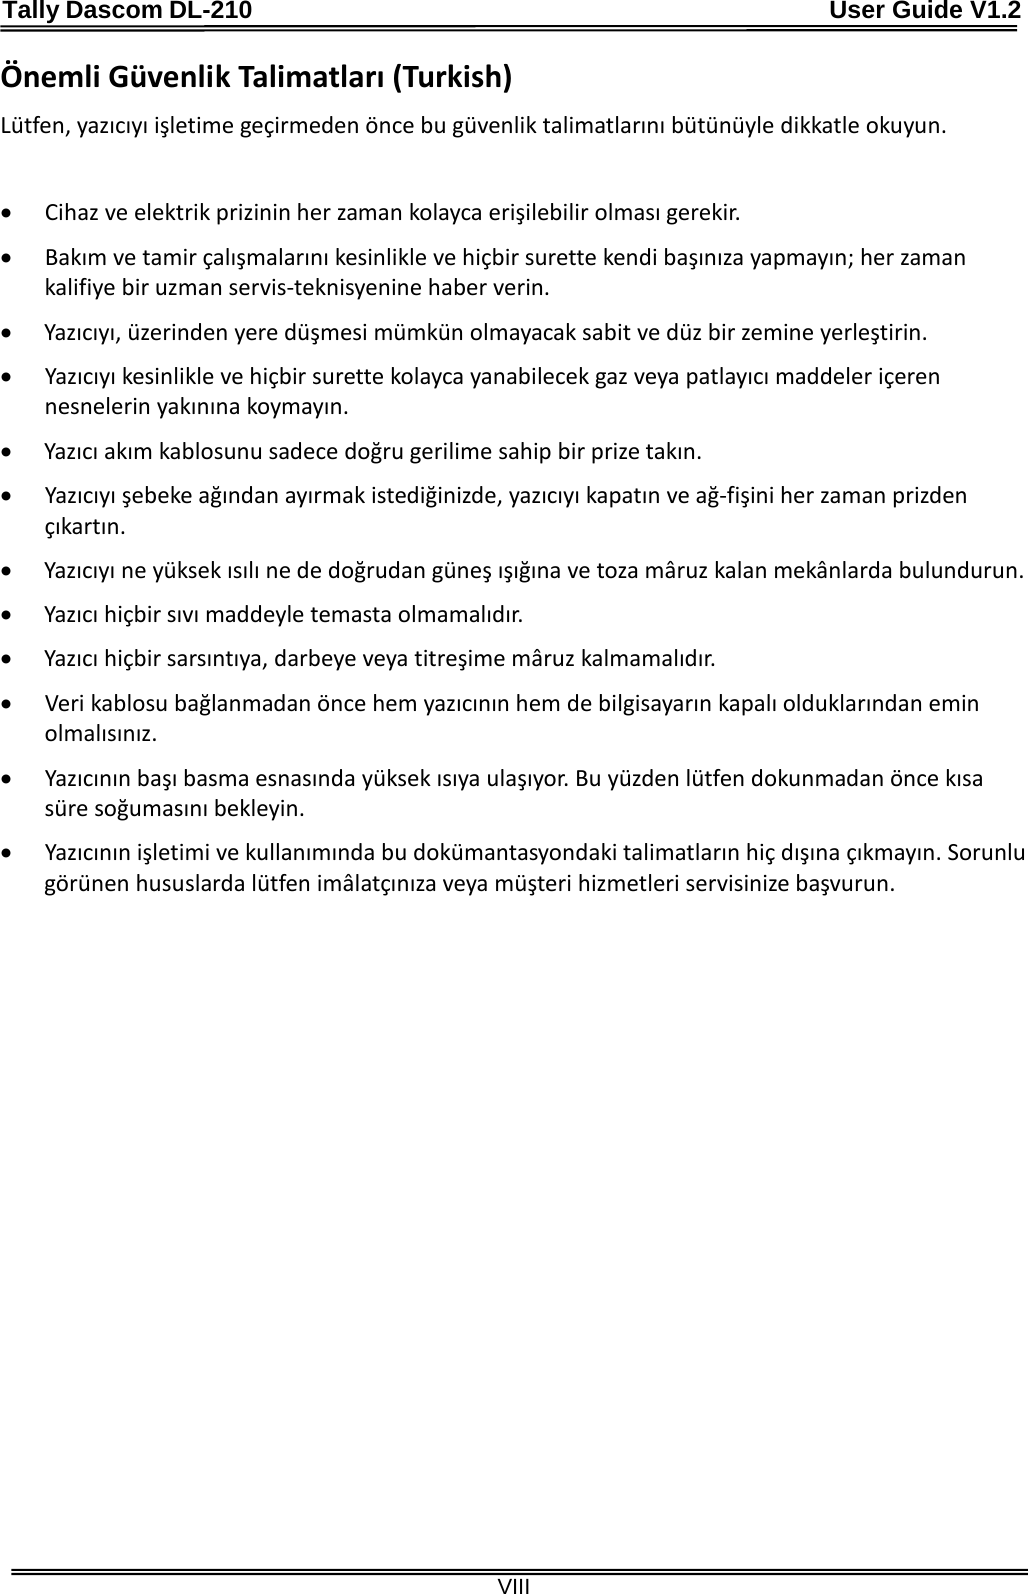 Tally Dascom DL-210                                              User Guide V1.2  VIII Önemli Güvenlik Talimatları (Turkish) Lütfen, yazıcıyı işletime geçirmeden önce bu güvenlik talimatlarını bütünüyle dikkatle okuyun.    • Cihaz ve elektrik prizinin her zaman kolayca erişilebilir olması gerekir. • Bakım ve tamir çalışmalarını kesinlikle ve hiçbir surette kendi başınıza yapmayın; her zaman kalifiye bir uzman servis-teknisyenine haber verin. • Yazıcıyı, üzerinden yere düşmesi mümkün olmayacak sabit ve düz bir zemine yerleştirin. • Yazıcıyı kesinlikle ve hiçbir surette kolayca yanabilecek gaz veya patlayıcı maddeler içeren nesnelerin yakınına koymayın. • Yazıcı akım kablosunu sadece doğru gerilime sahip bir prize takın. • Yazıcıyı şebeke ağından ayırmak istediğinizde, yazıcıyı kapatın ve ağ-fişini her zaman prizden çıkartın. • Yazıcıyı ne yüksek ısılı ne de doğrudan güneş ışığına ve toza mâruz kalan mekânlarda bulundurun. • Yazıcı hiçbir sıvı maddeyle temasta olmamalıdır. • Yazıcı hiçbir sarsıntıya, darbeye veya titreşime mâruz kalmamalıdır.   • Veri kablosu bağlanmadan önce hem yazıcının hem de bilgisayarın kapalı olduklarından emin olmalısınız. • Yazıcının başı basma esnasında yüksek ısıya ulaşıyor. Bu yüzden lütfen dokunmadan önce kısa süre soğumasını bekleyin.   • Yazıcının işletimi ve kullanımında bu dokümantasyondaki talimatların hiç dışına çıkmayın. Sorunlu görünen hususlarda lütfen imâlatçınıza veya müşteri hizmetleri servisinize başvurun. 